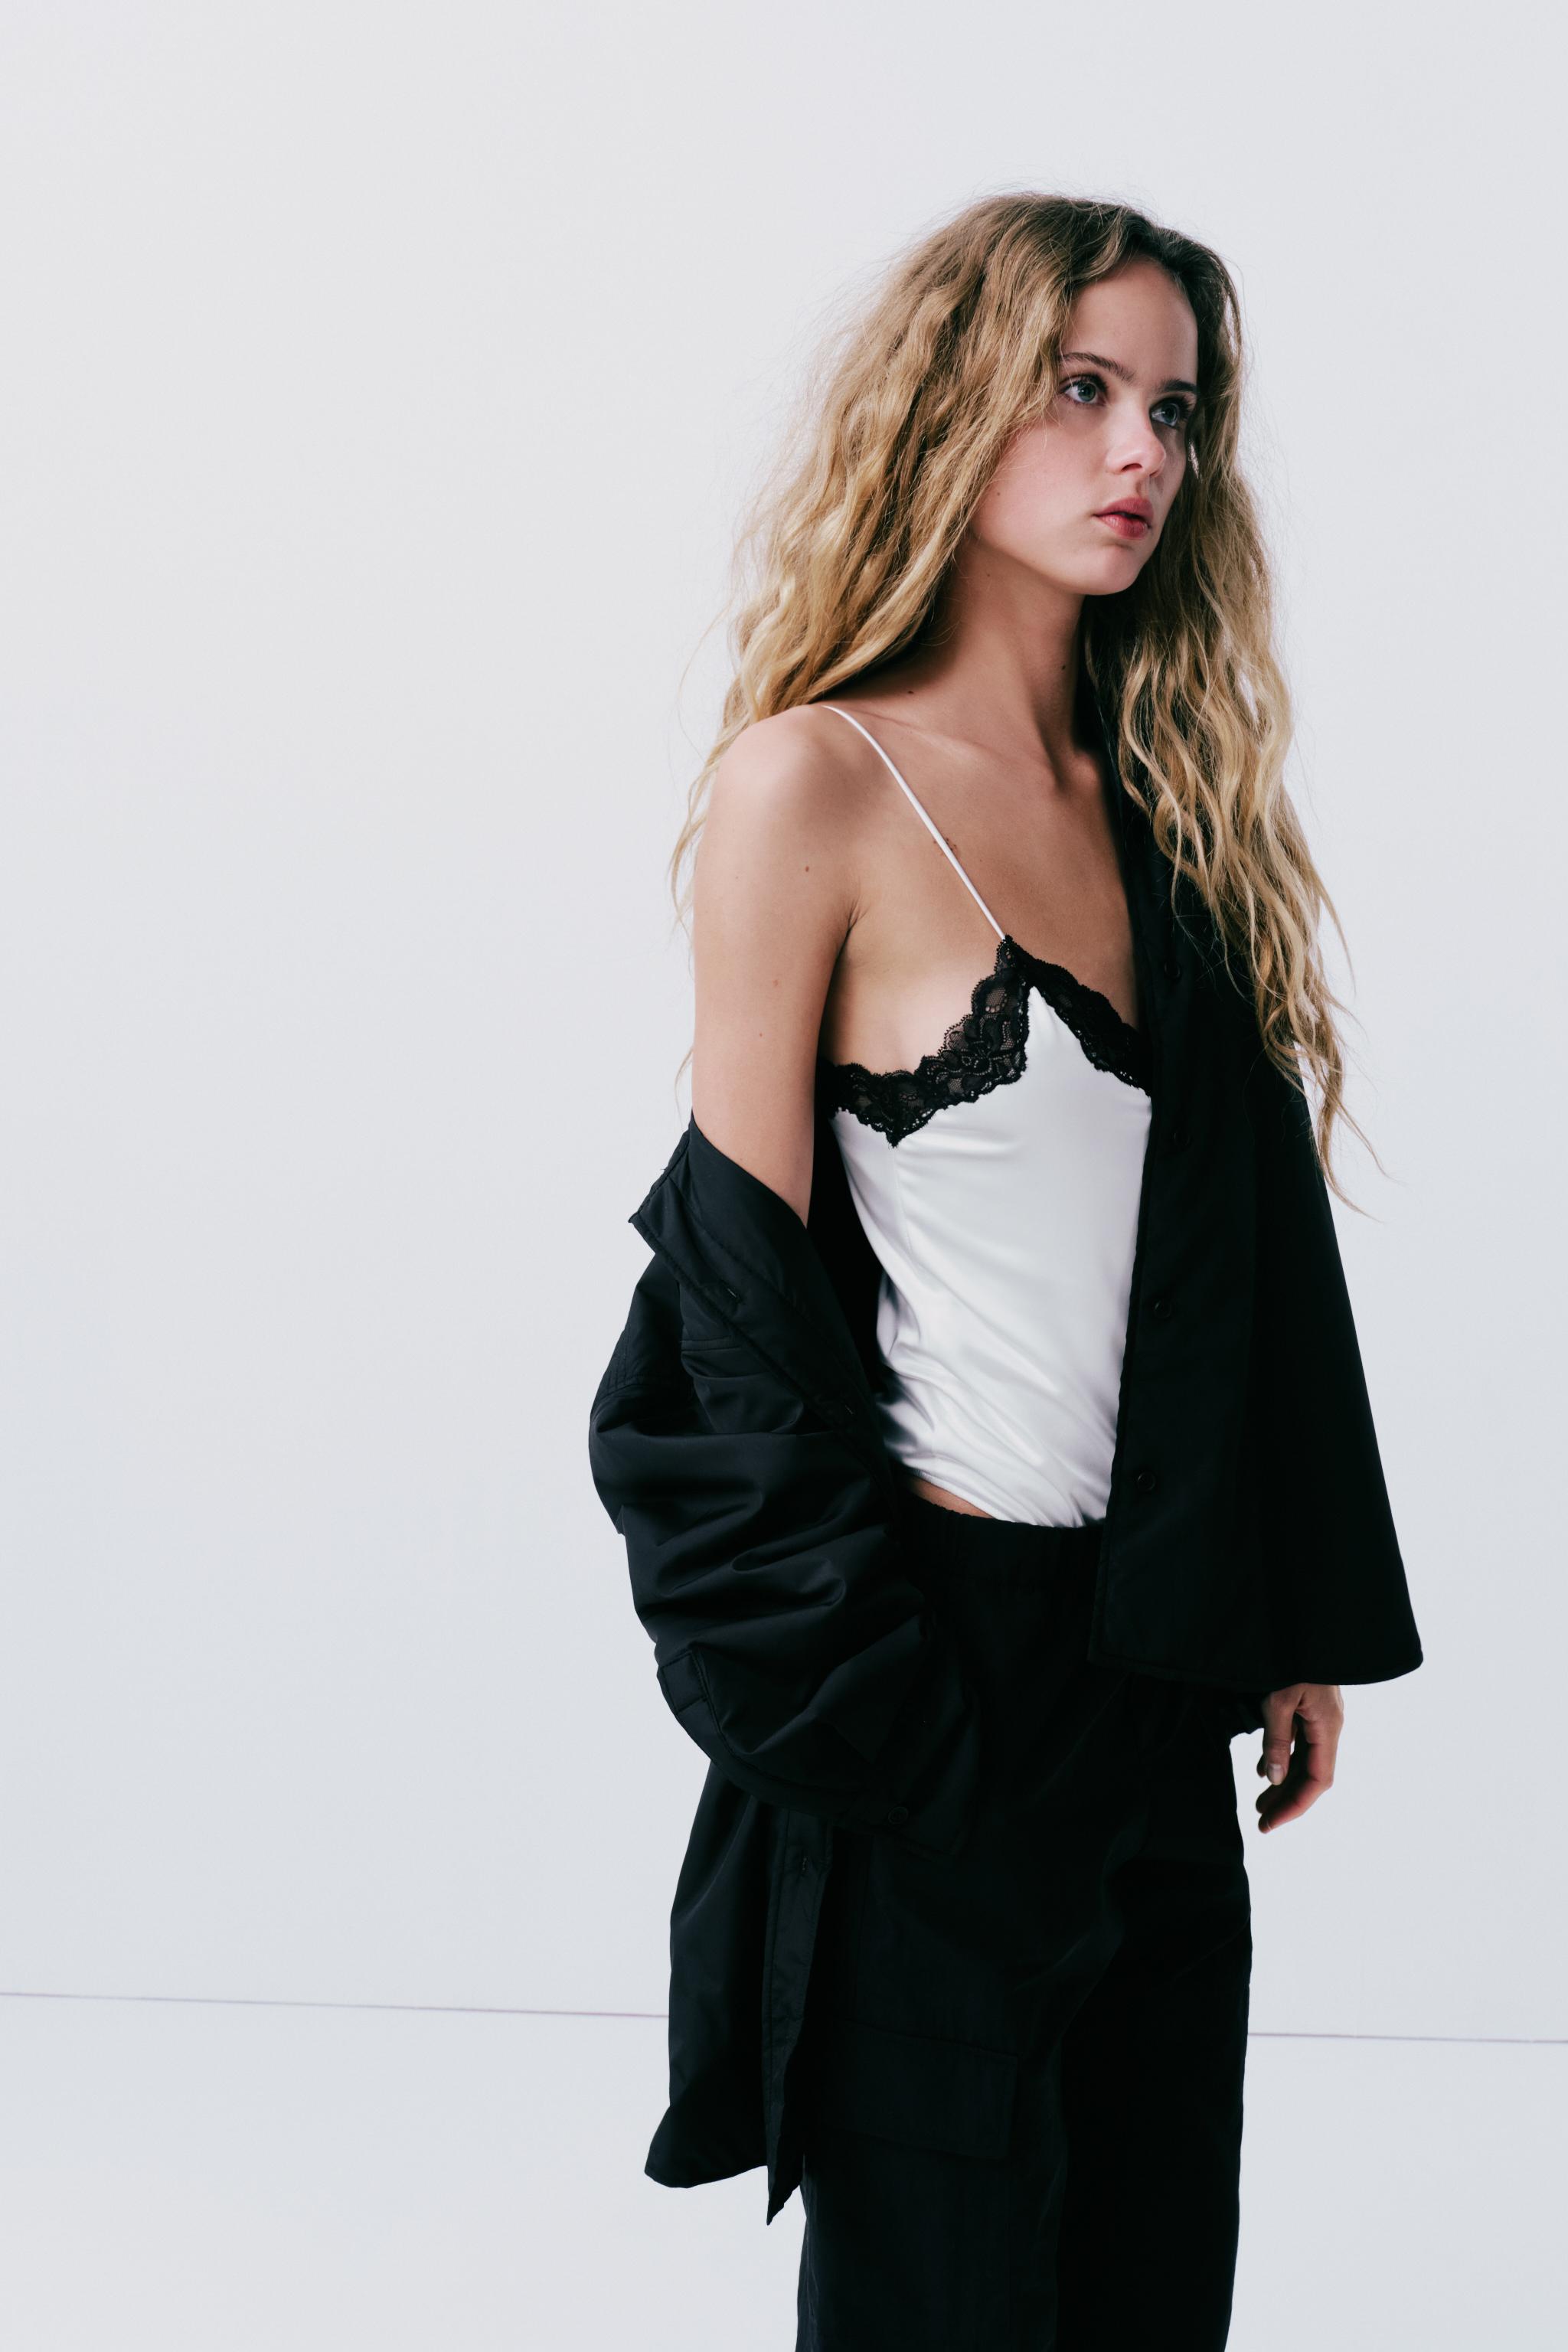 Zara Black Lace Bodysuit Size S BNWT